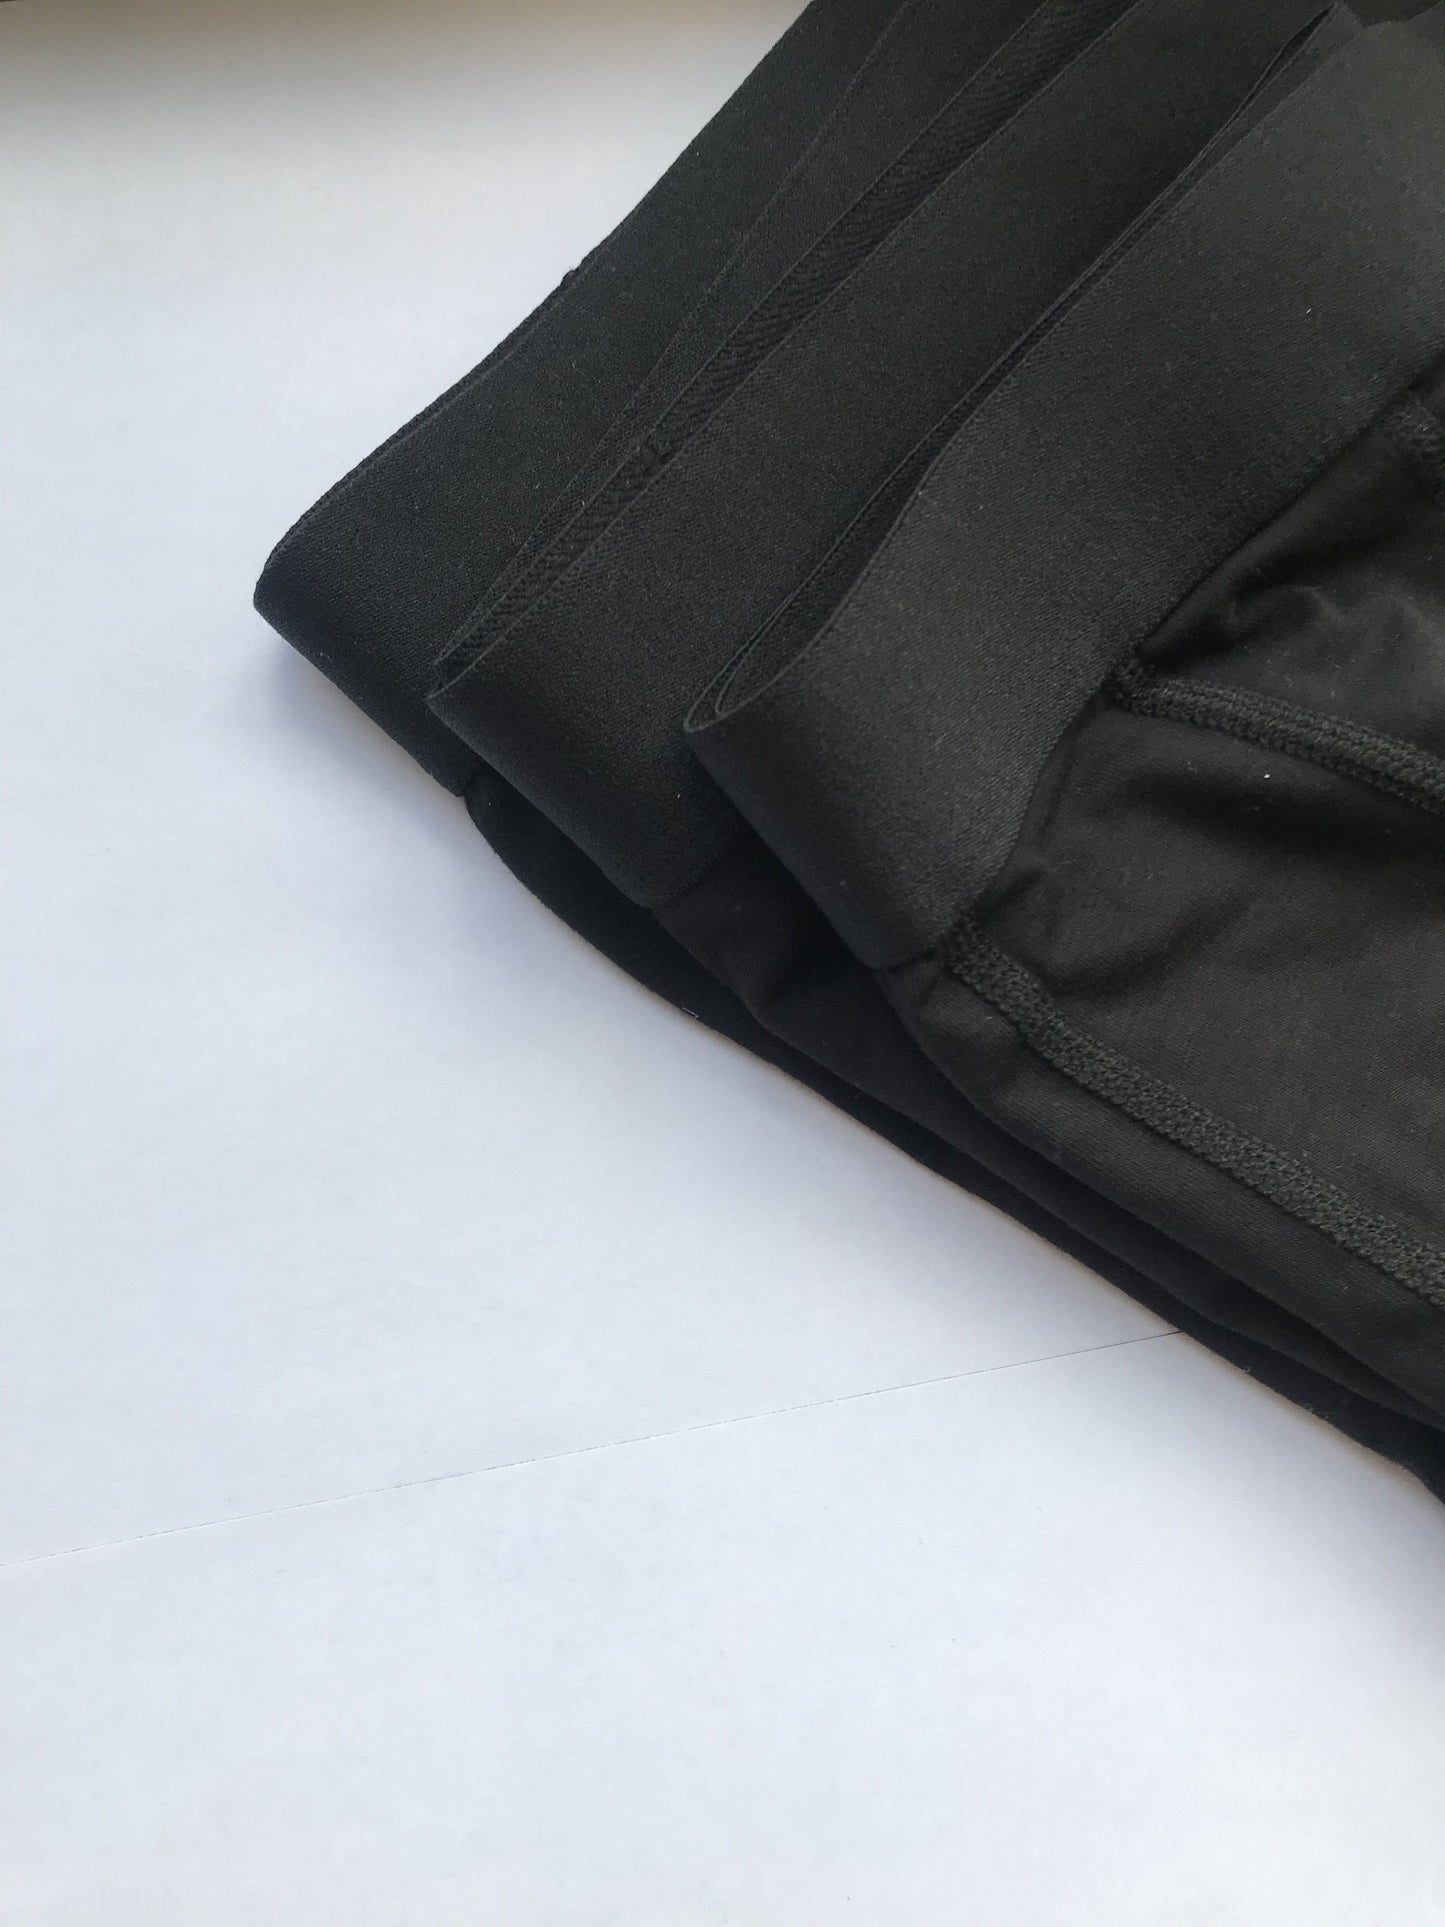 3-pack Boxer Briefs. Viscose fabric and lightweight leisure underwear